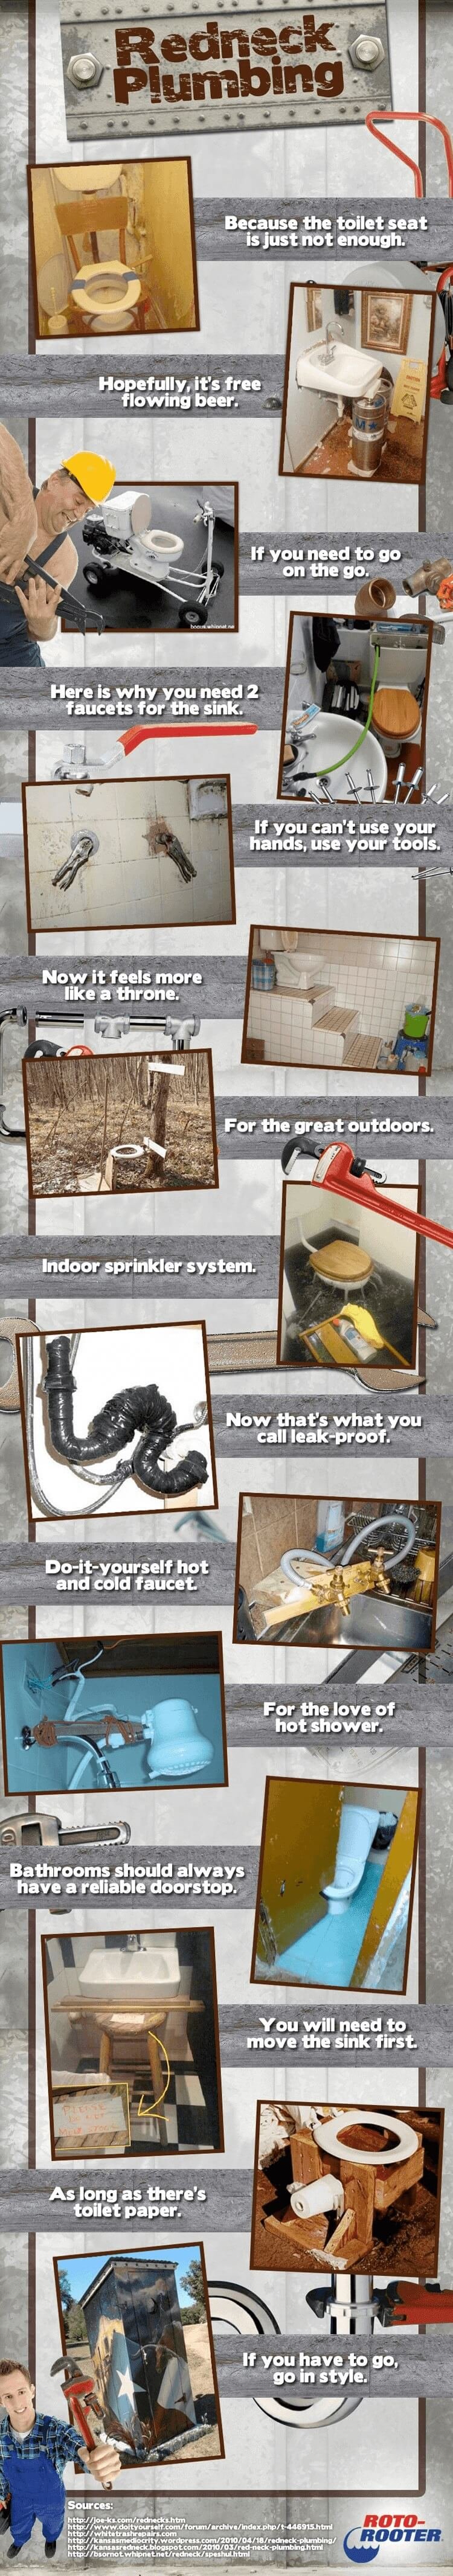 redneck plumbing